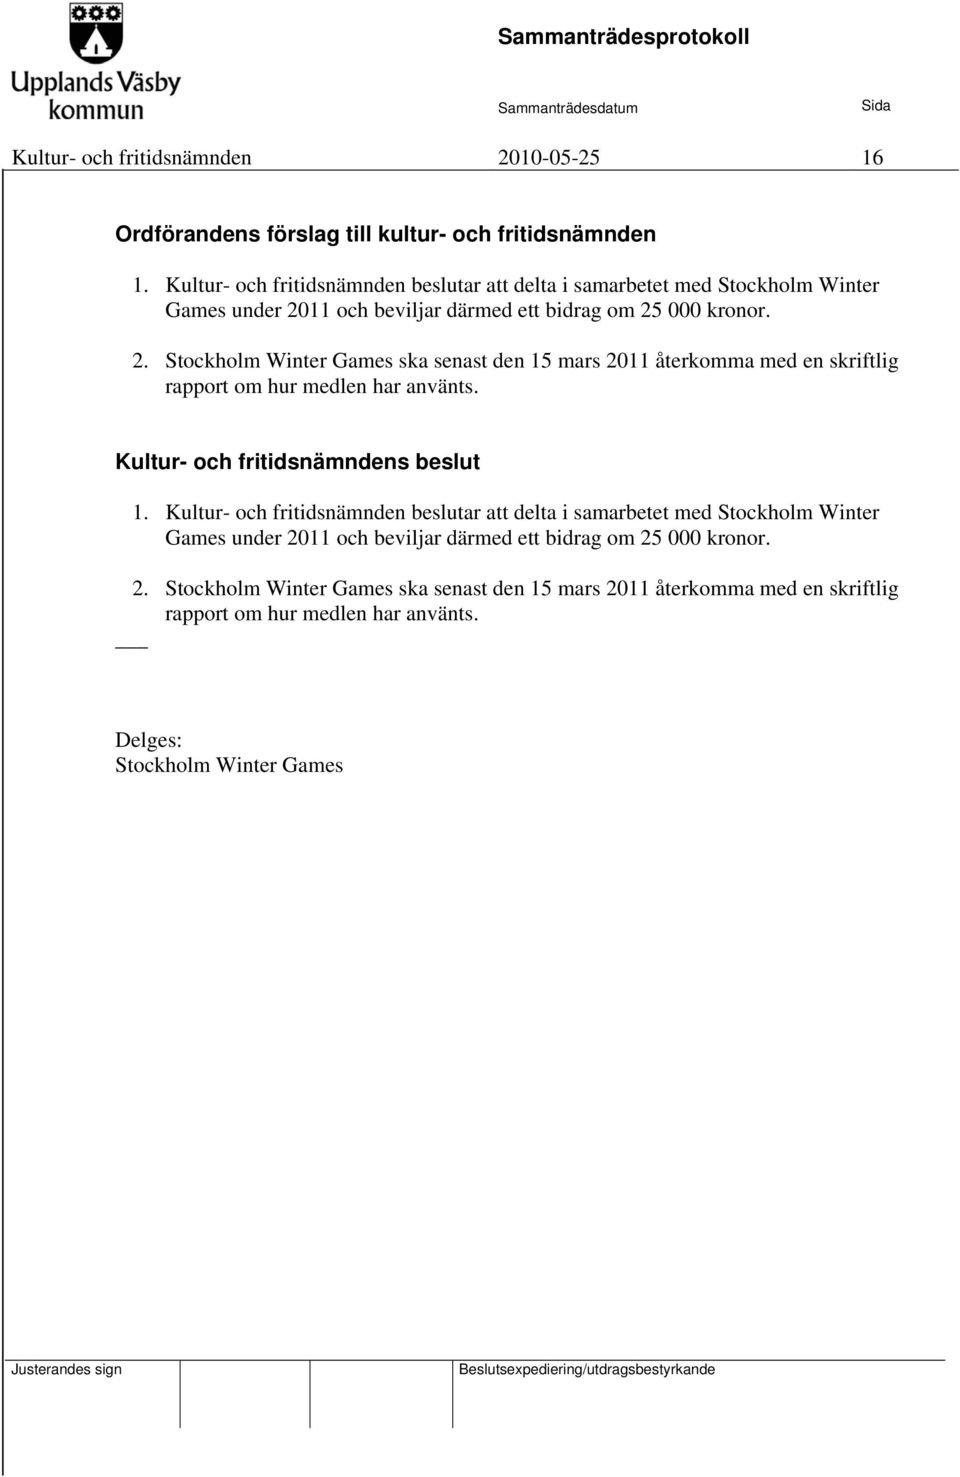 11 och beviljar därmed ett bidrag om 25 000 kronor. 2. Stockholm Winter Games ska senast den 15 mars 2011 återkomma med en skriftlig rapport om hur medlen har använts.